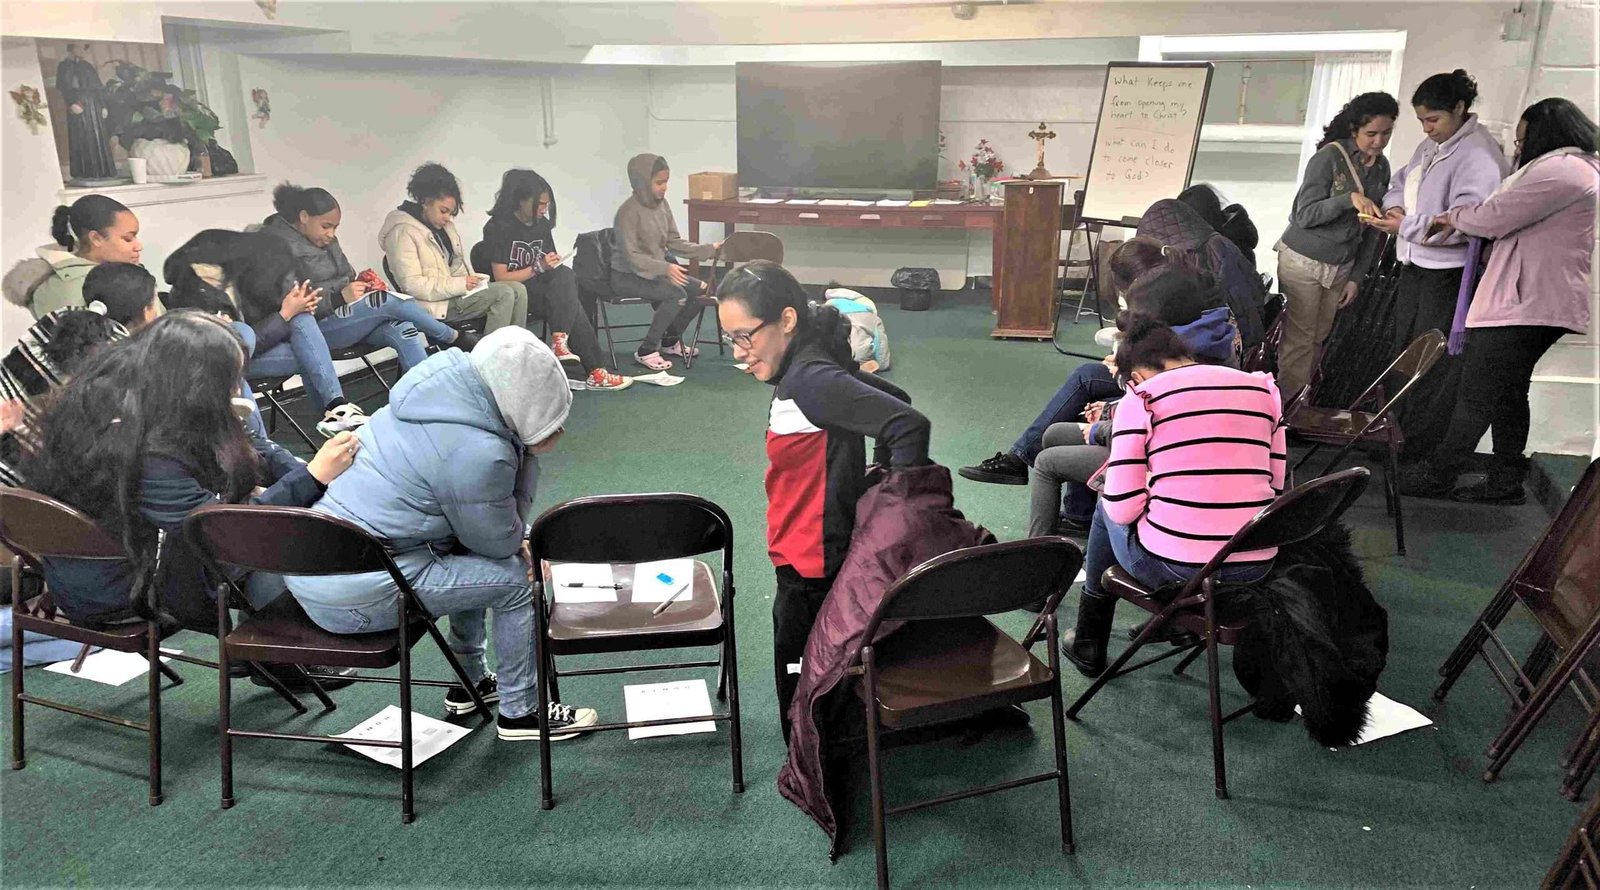 Motus Christi para adolescentes: Las jóvenes del Bronx encuentran comunidad, fe y amistad